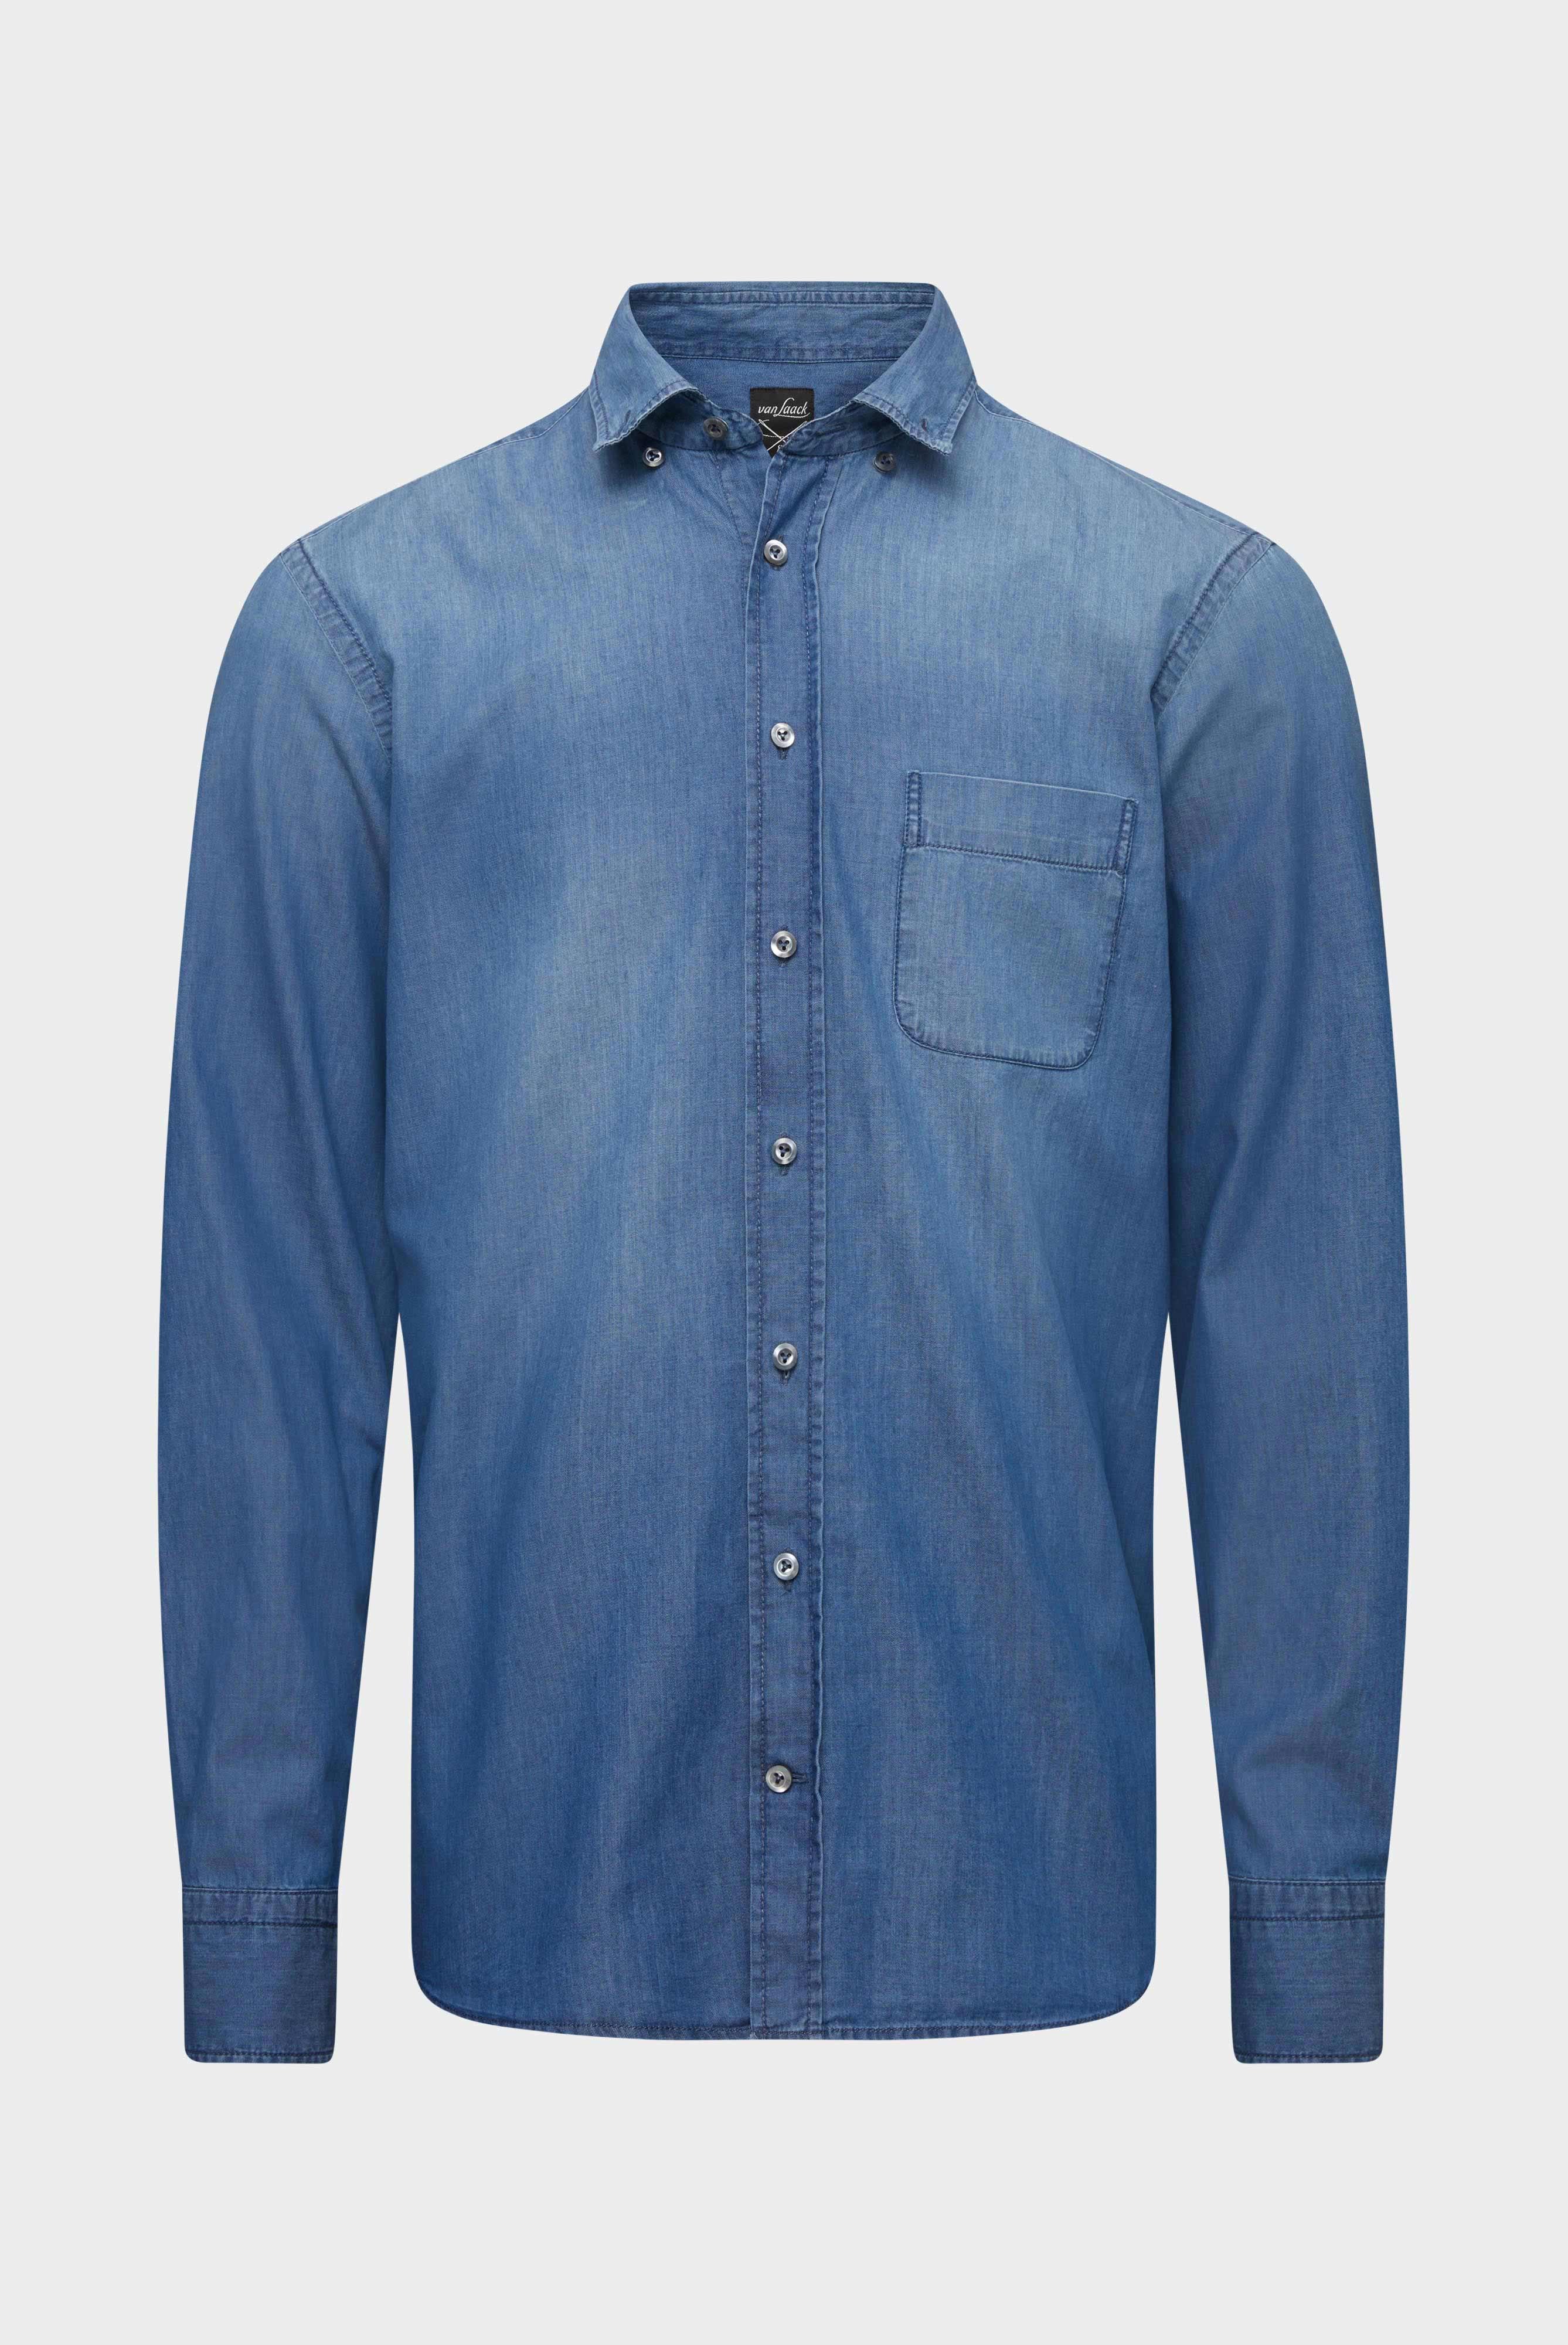 Casual Hemden+Jeans Hemd Tailor Fit+20.2013.ET.155330.740.39